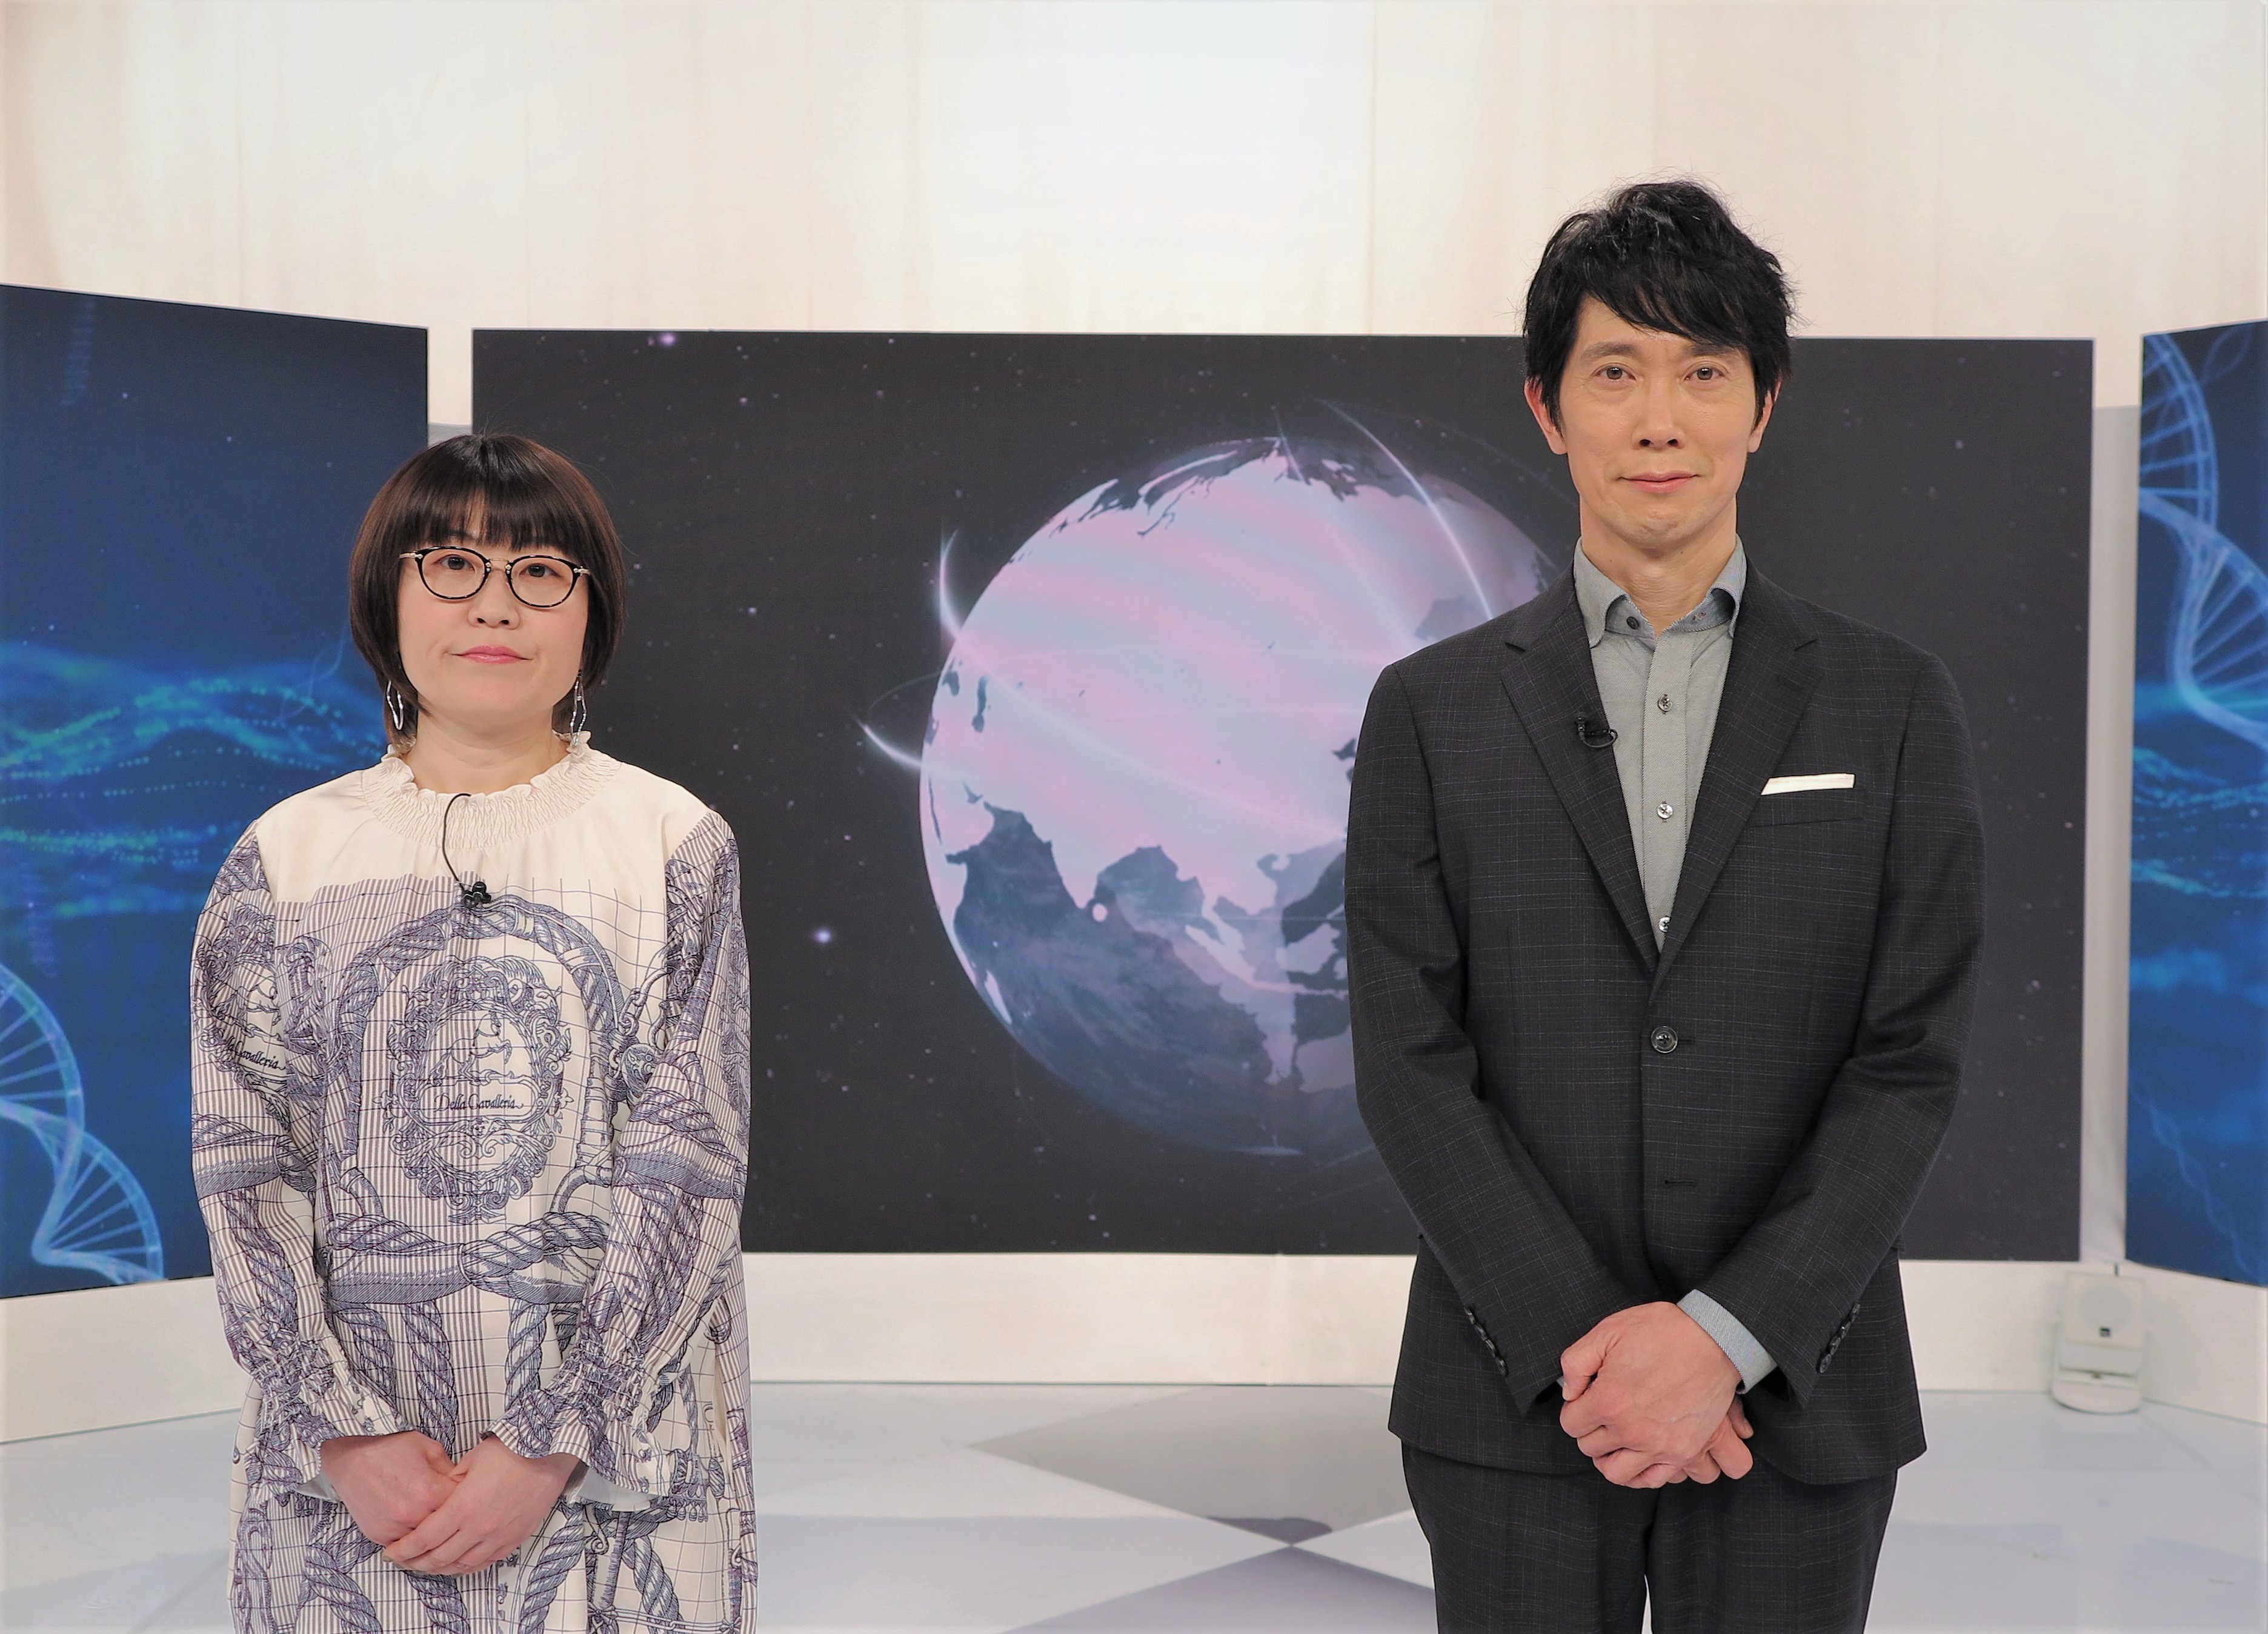 ハーゲンダッツの新ブランドメッセージ “ハローしあわせ。” 新TV-CMに、佐藤健さんと平手友梨奈さん登場　TV-CMの放映に合わせてスペシャルインタビュー動画も公開